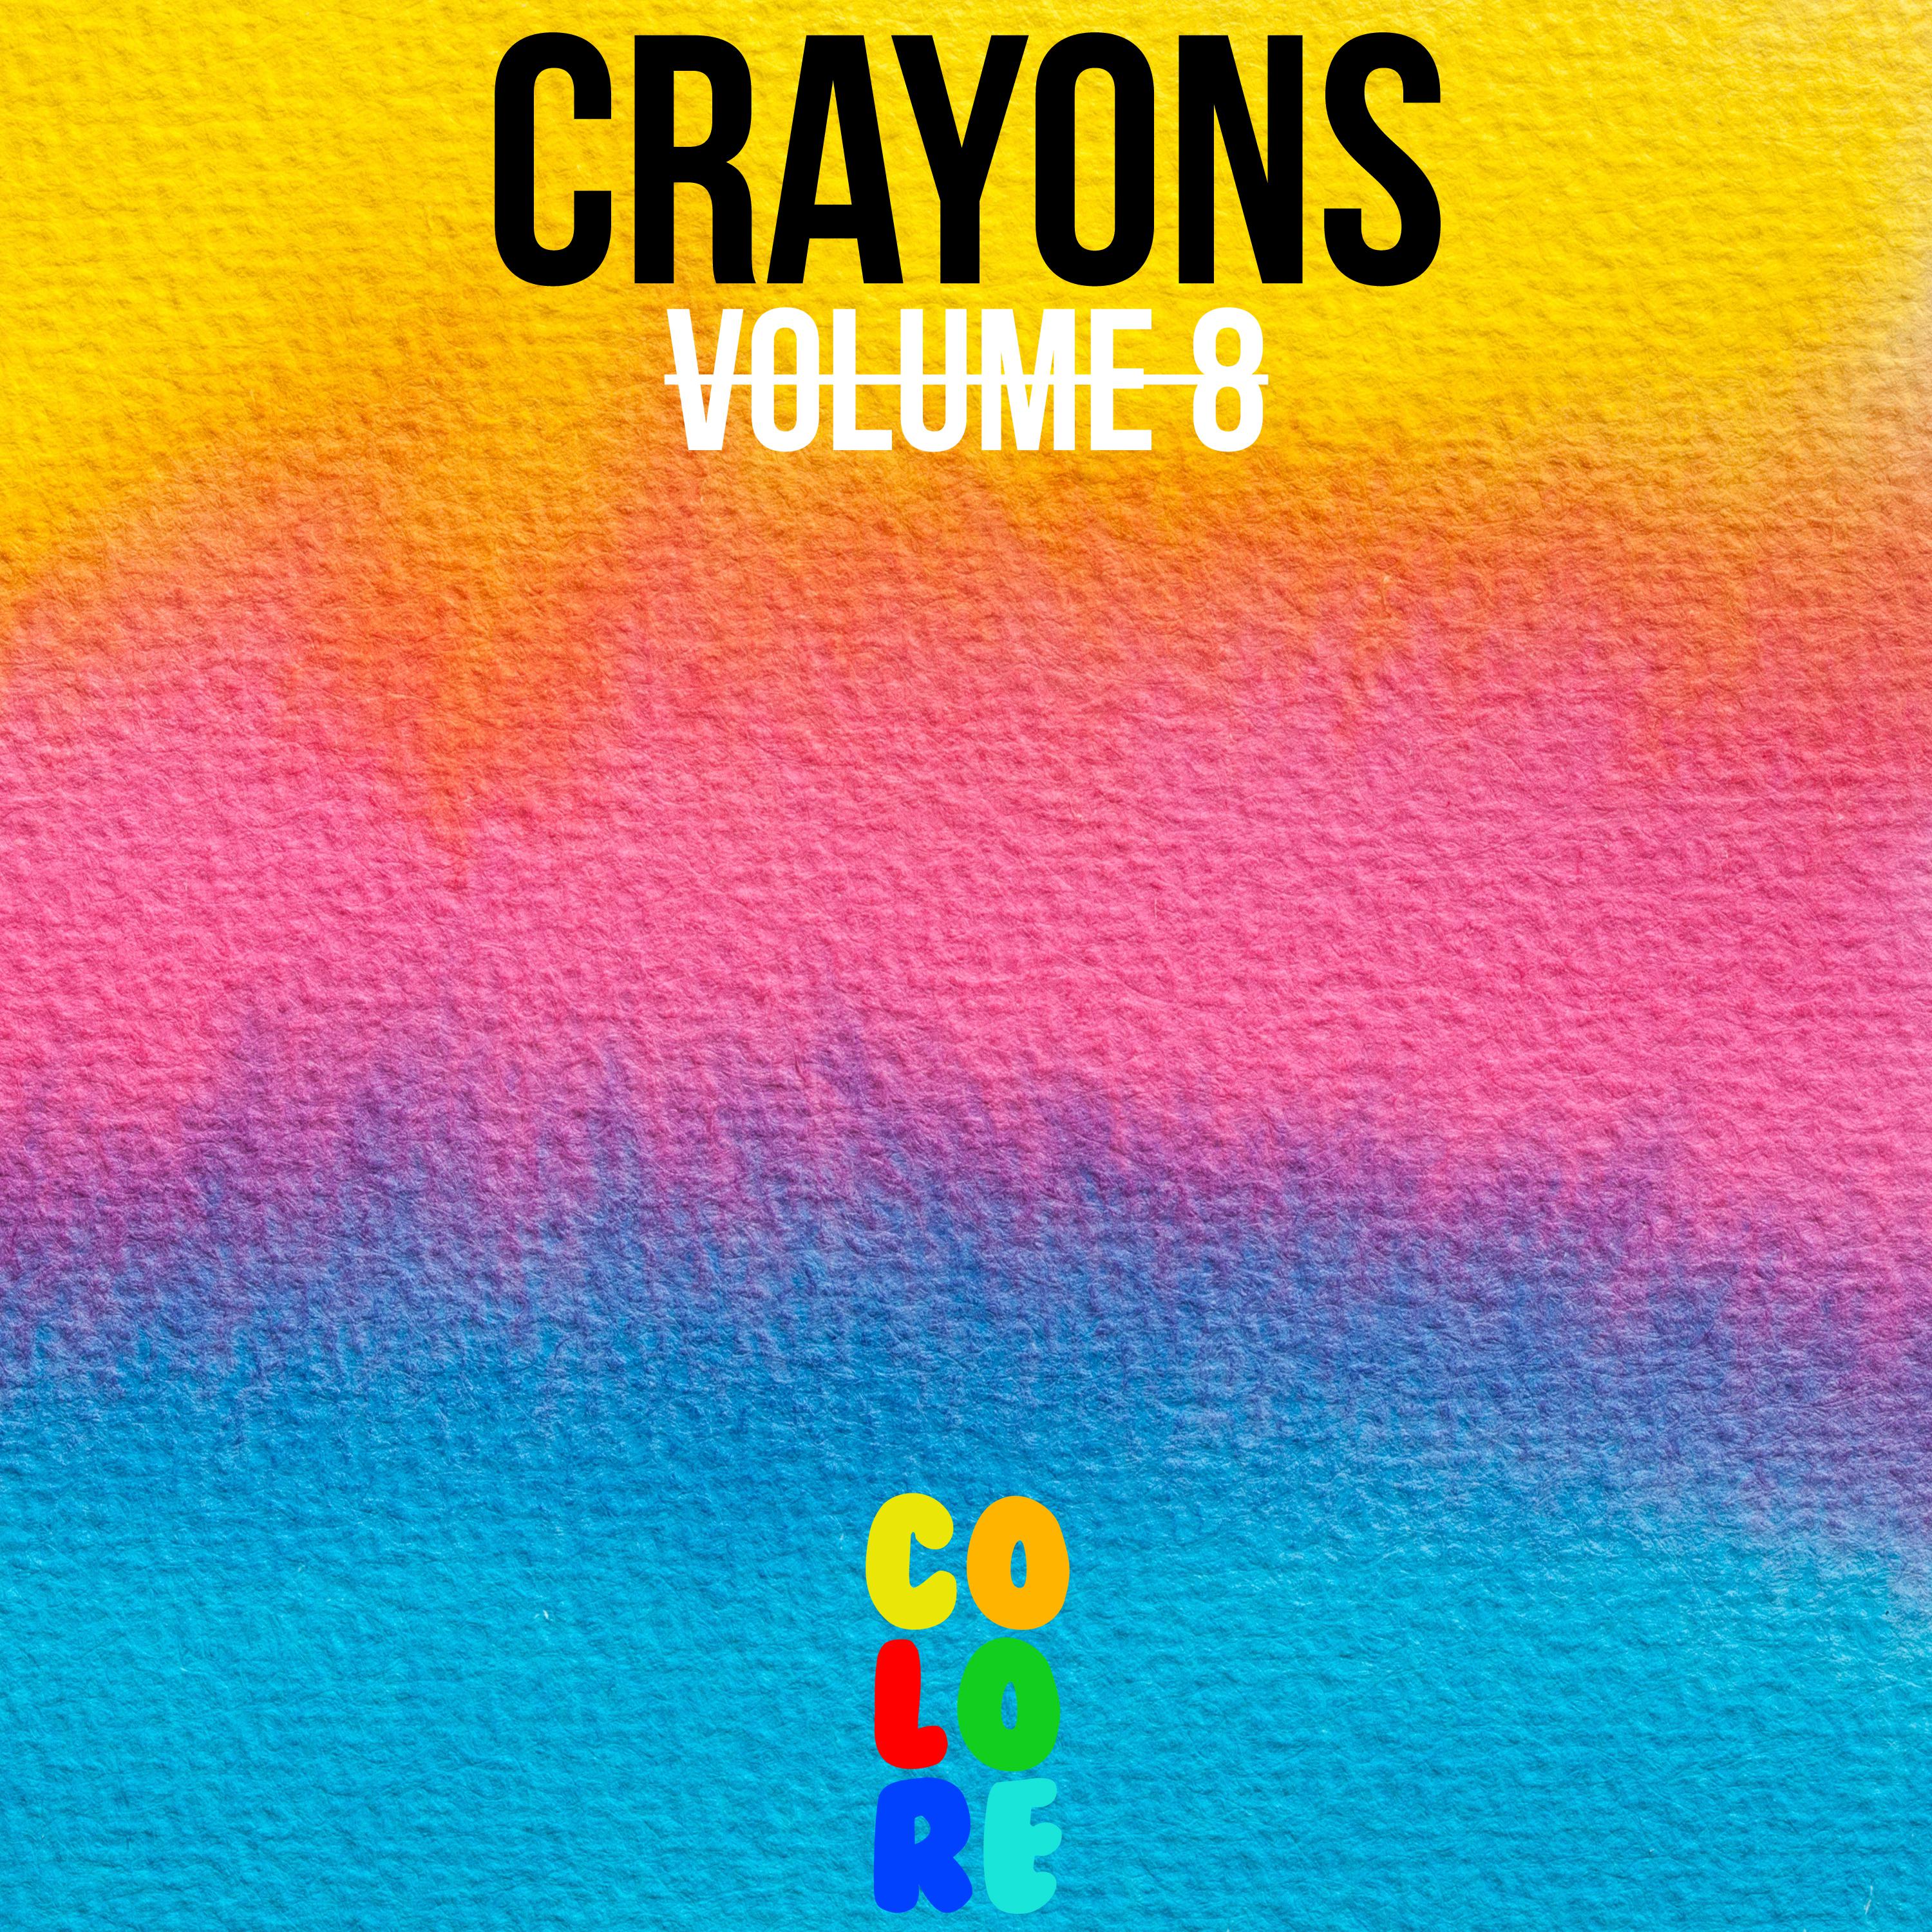 Crayons, Vol. 8